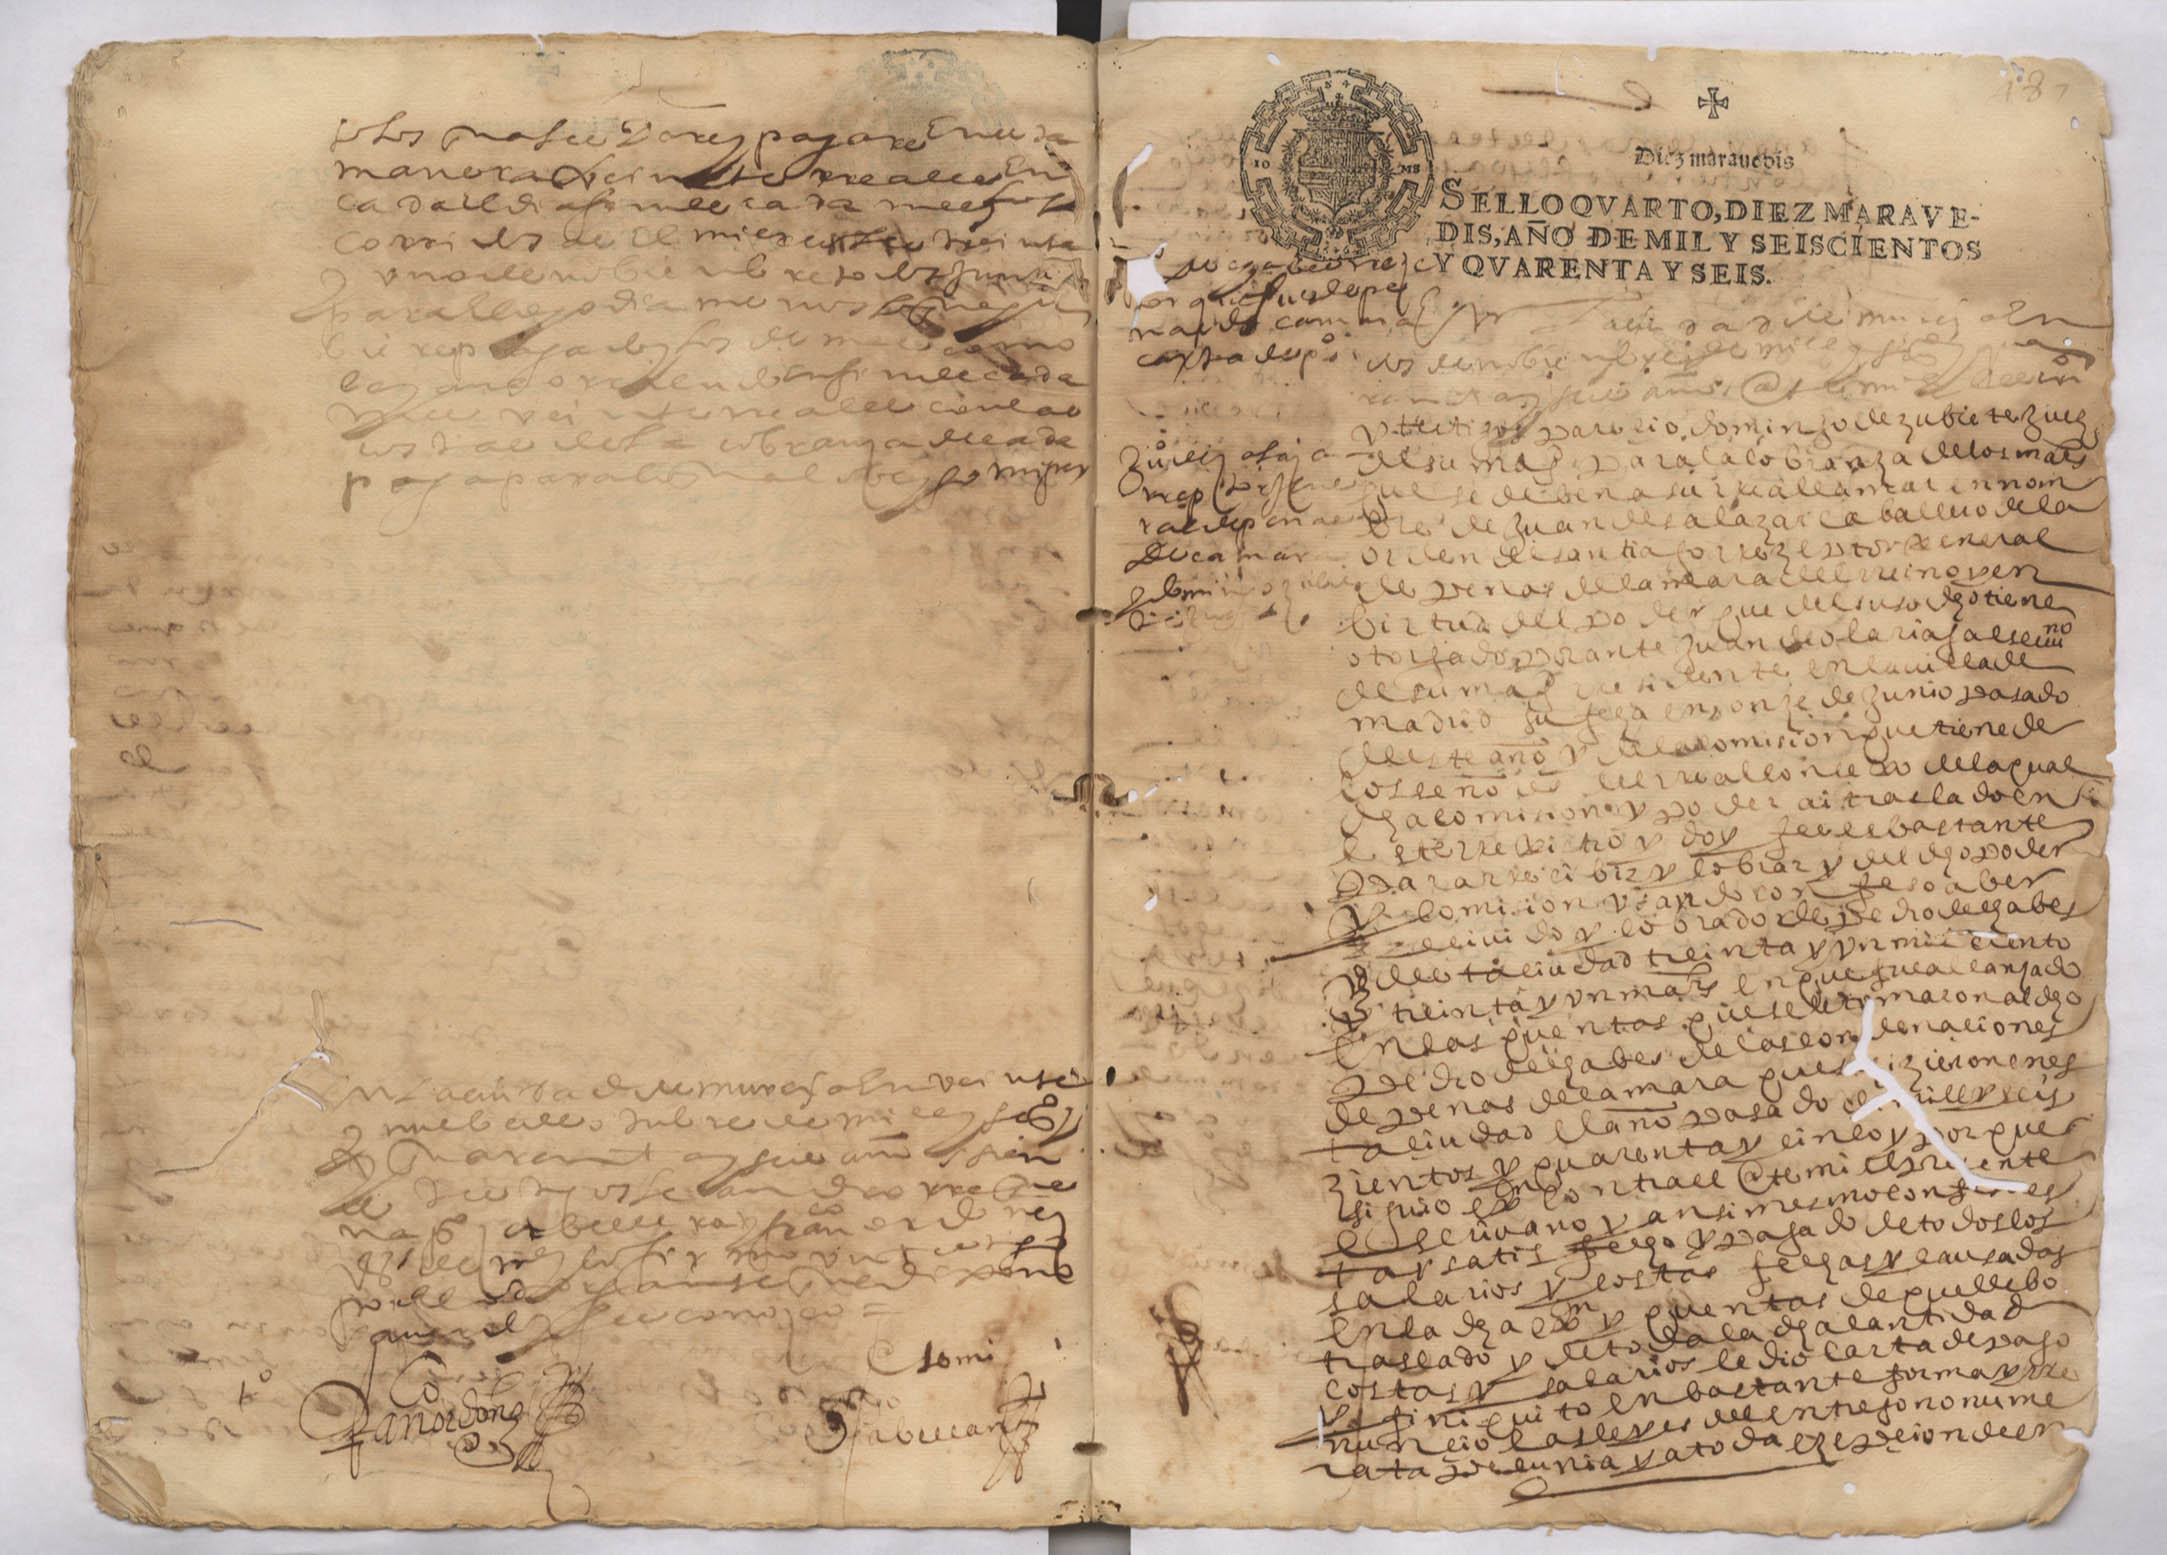 Registro de Pedro Abellán, Murcia de 1646.